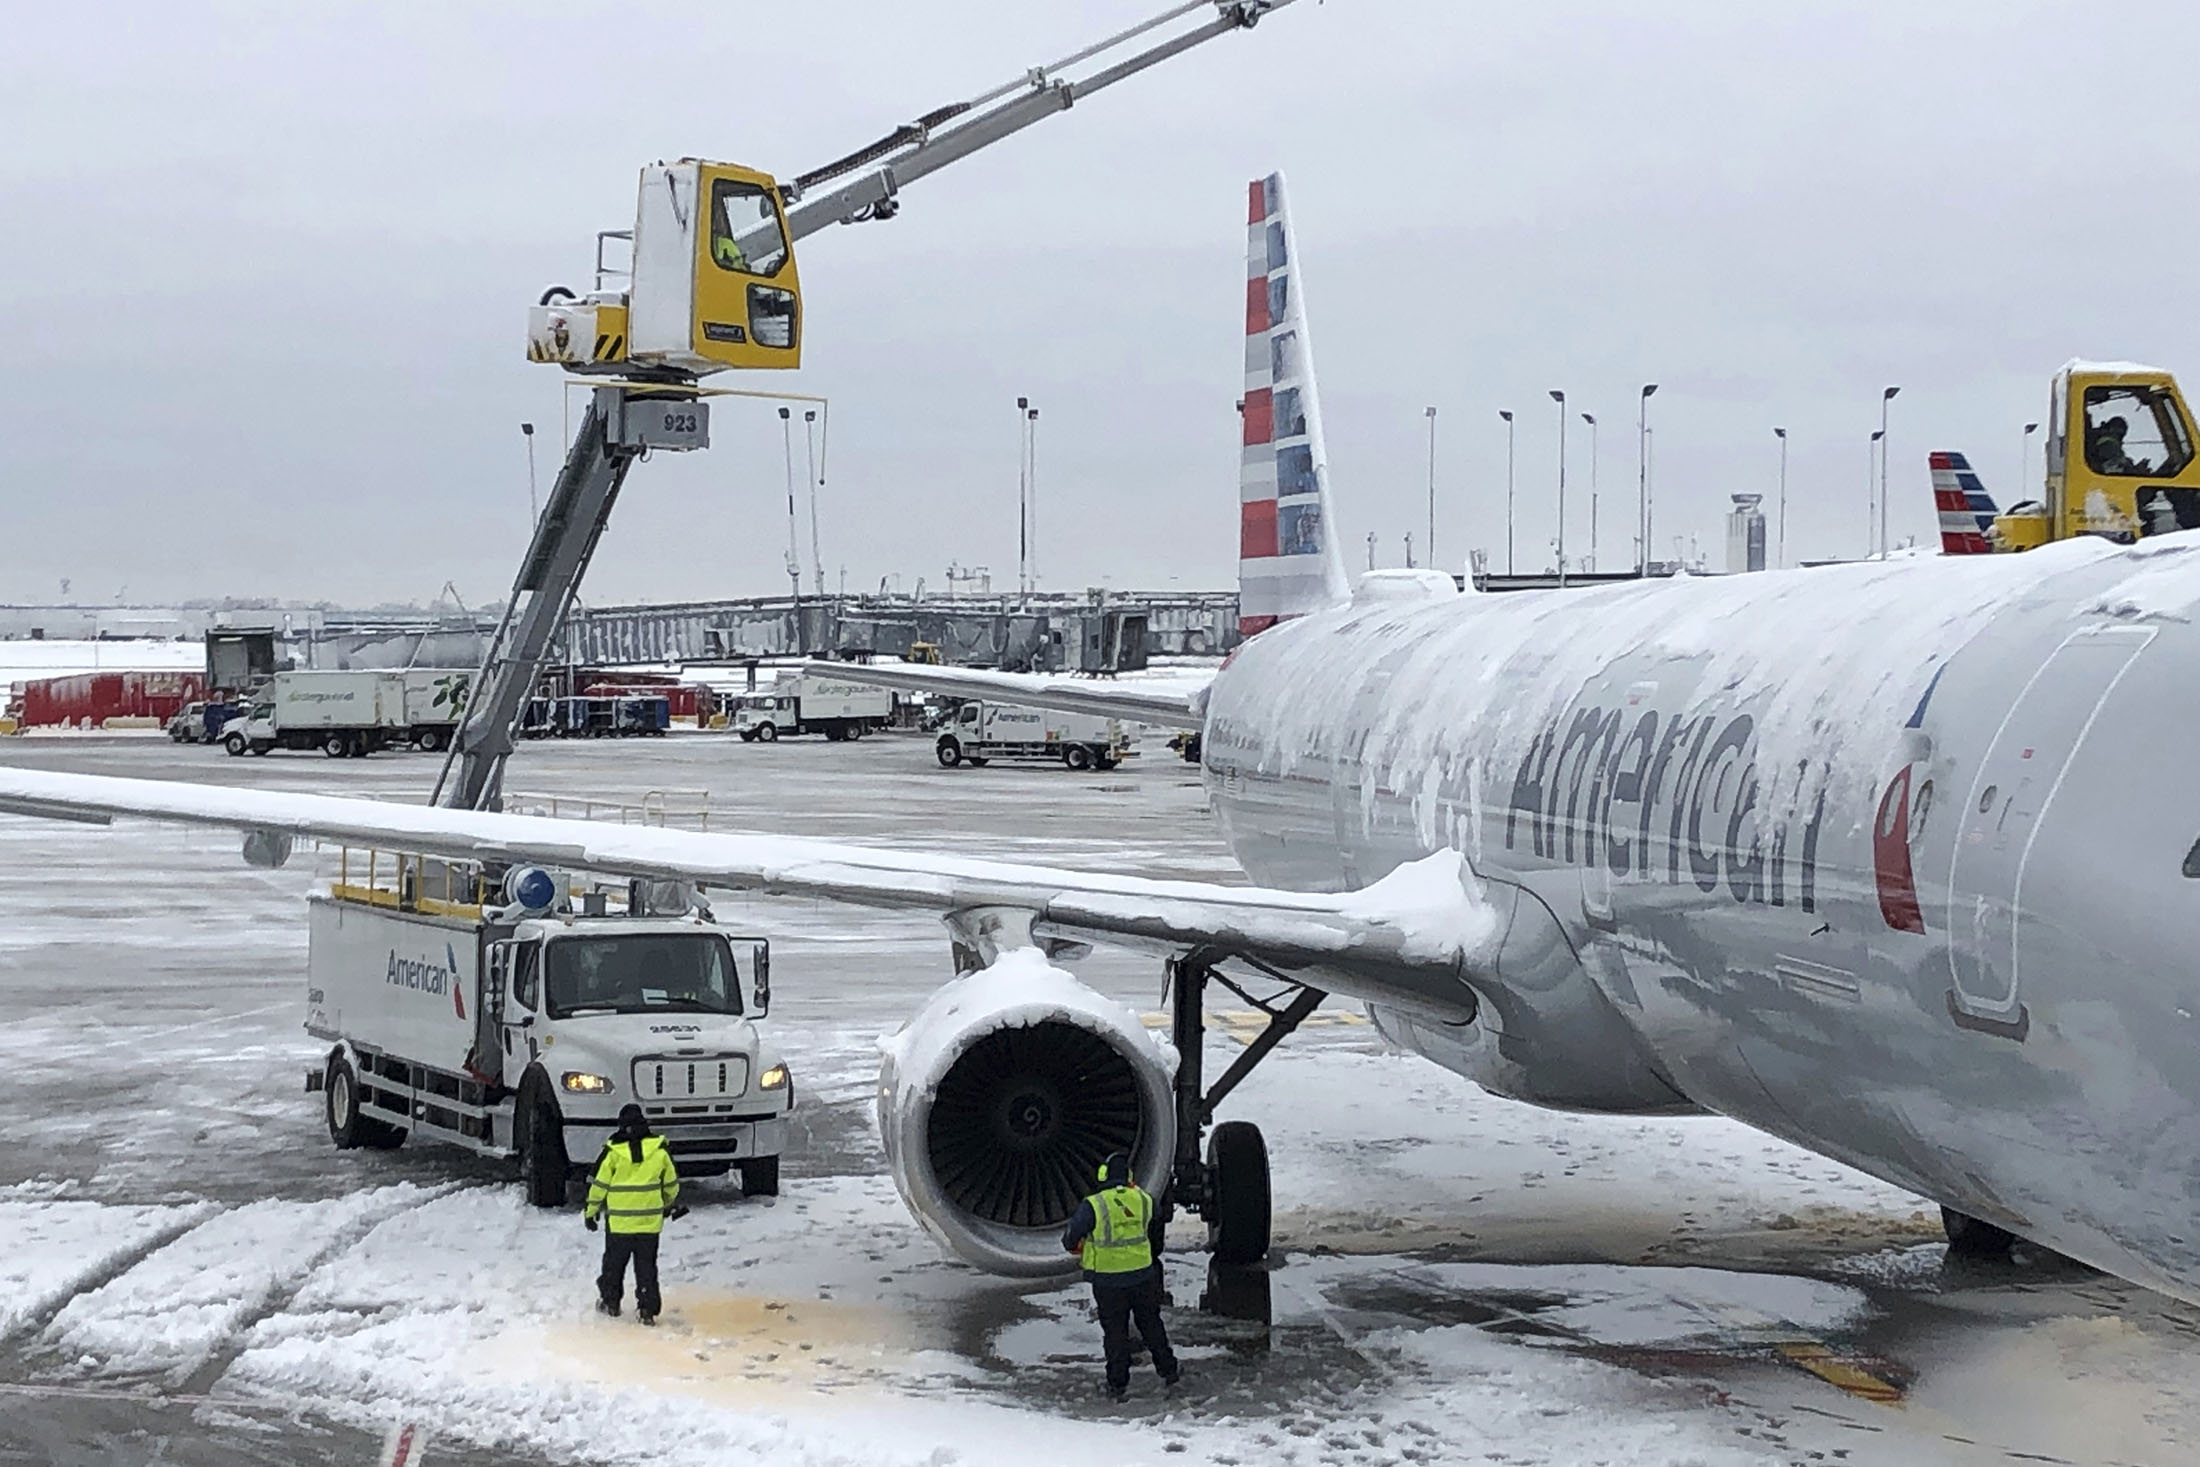 Resultado de imagen para storm snow US airports